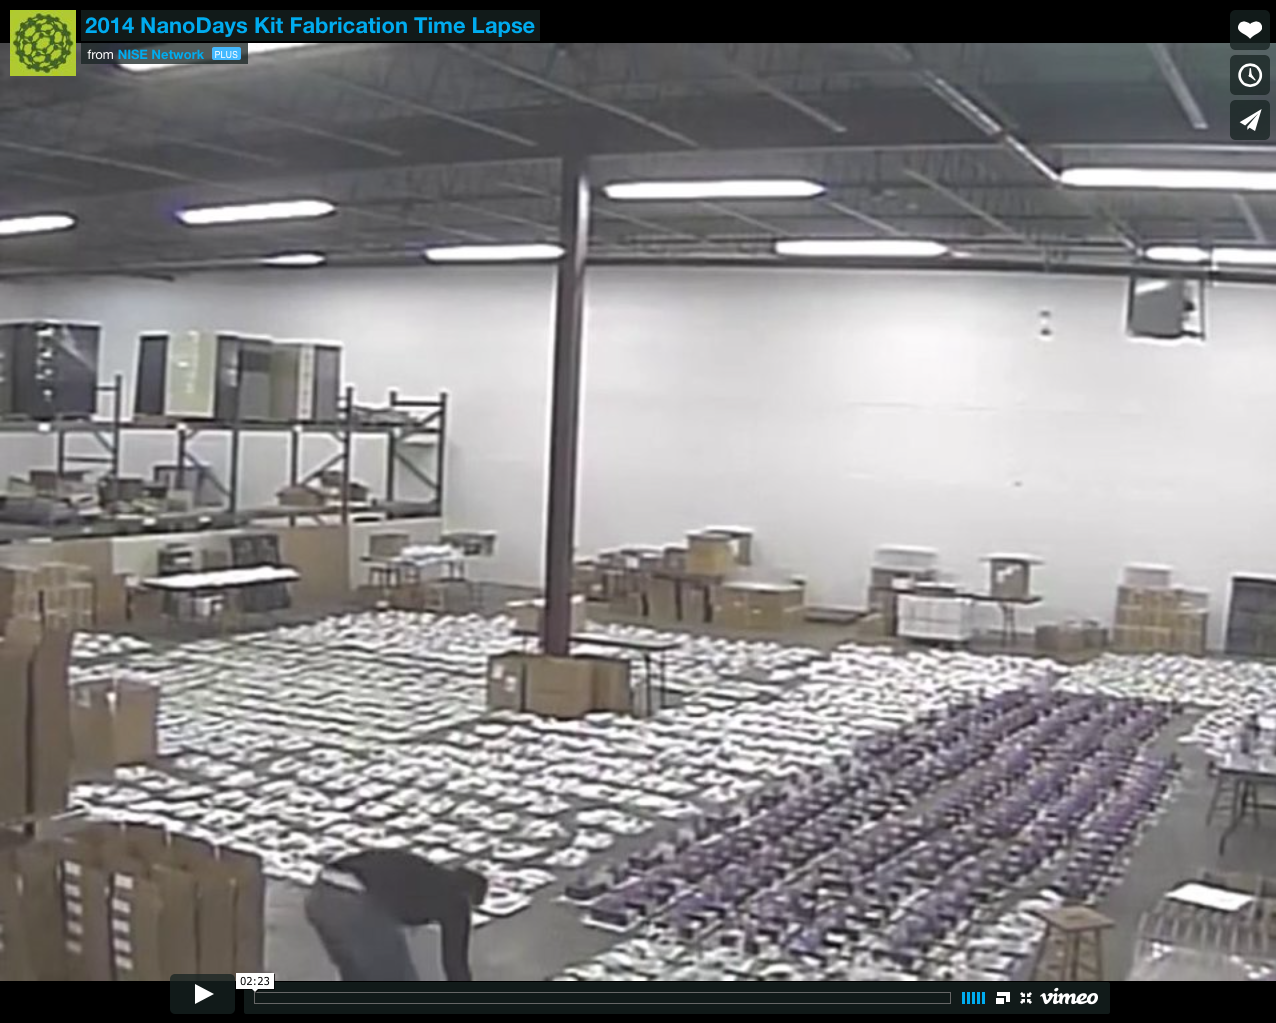 NanoDays 2014 time lapse fabrication video at Minnesota warehouse